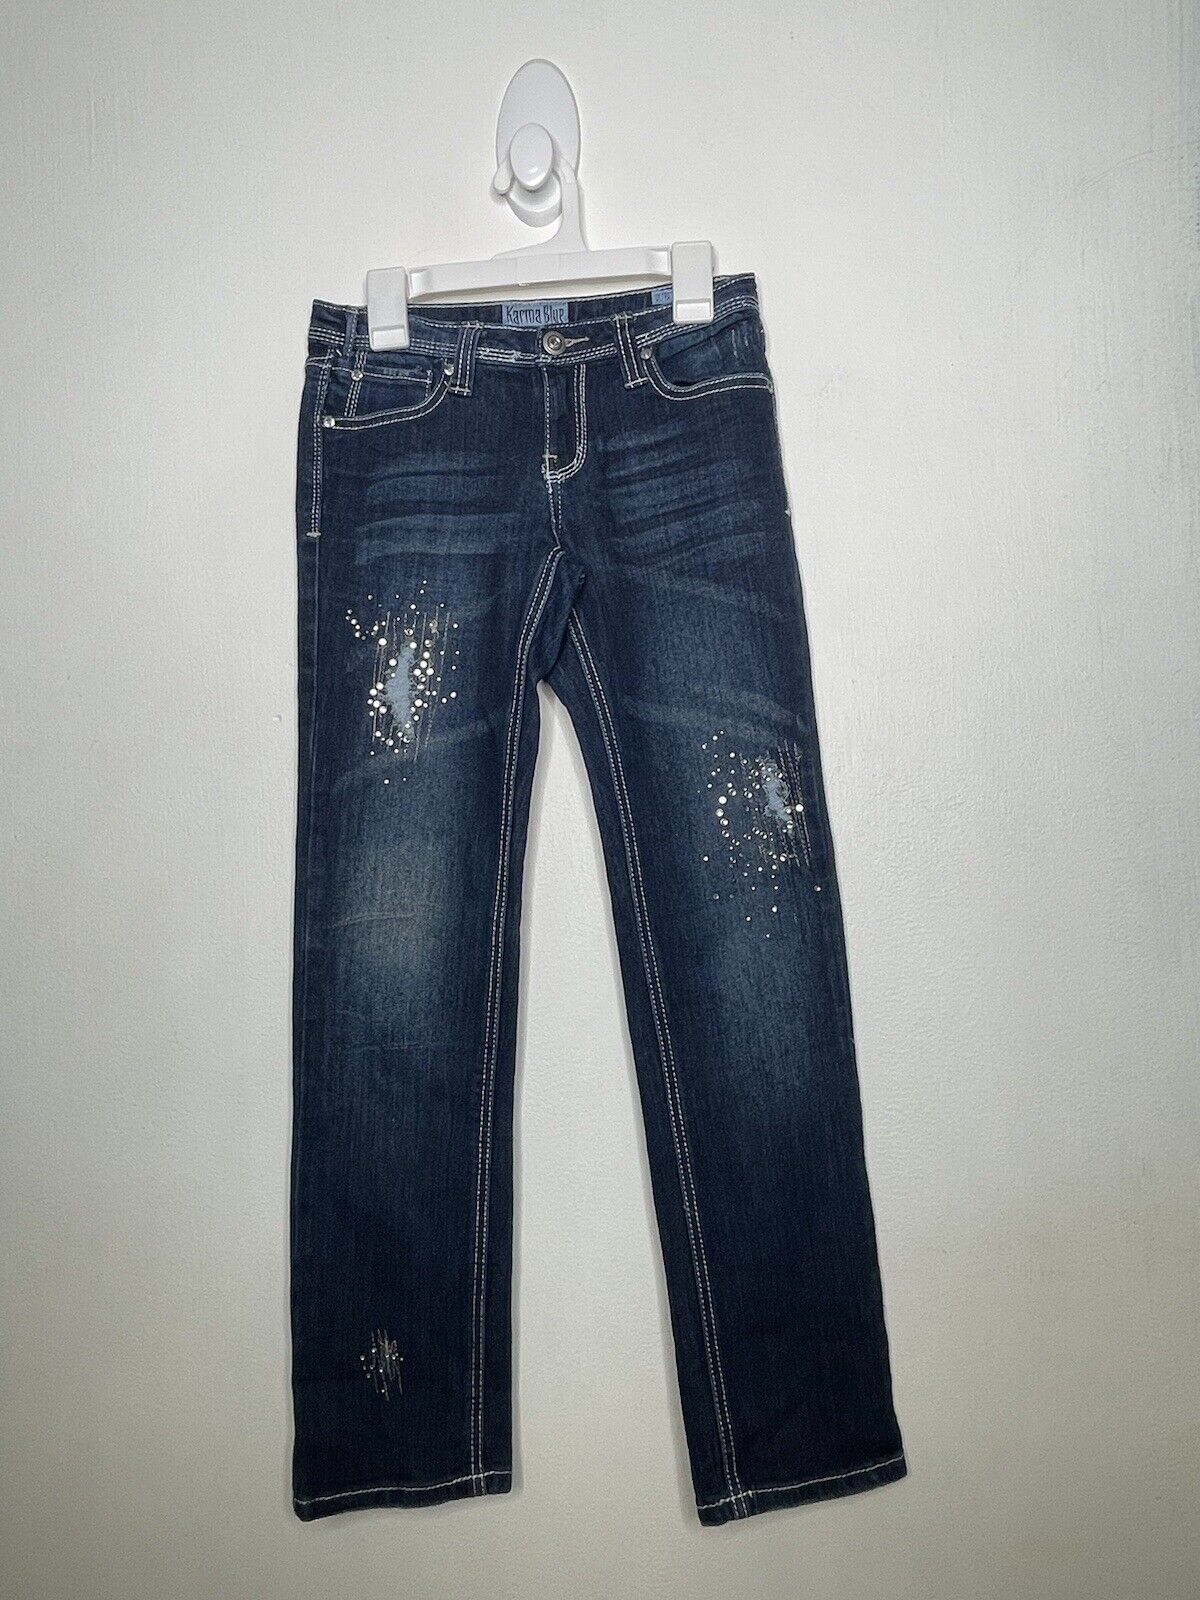 Karma Blue Skinny Jeans Girls Size 10 Stretch Dark Wash Distressed Denim eBay